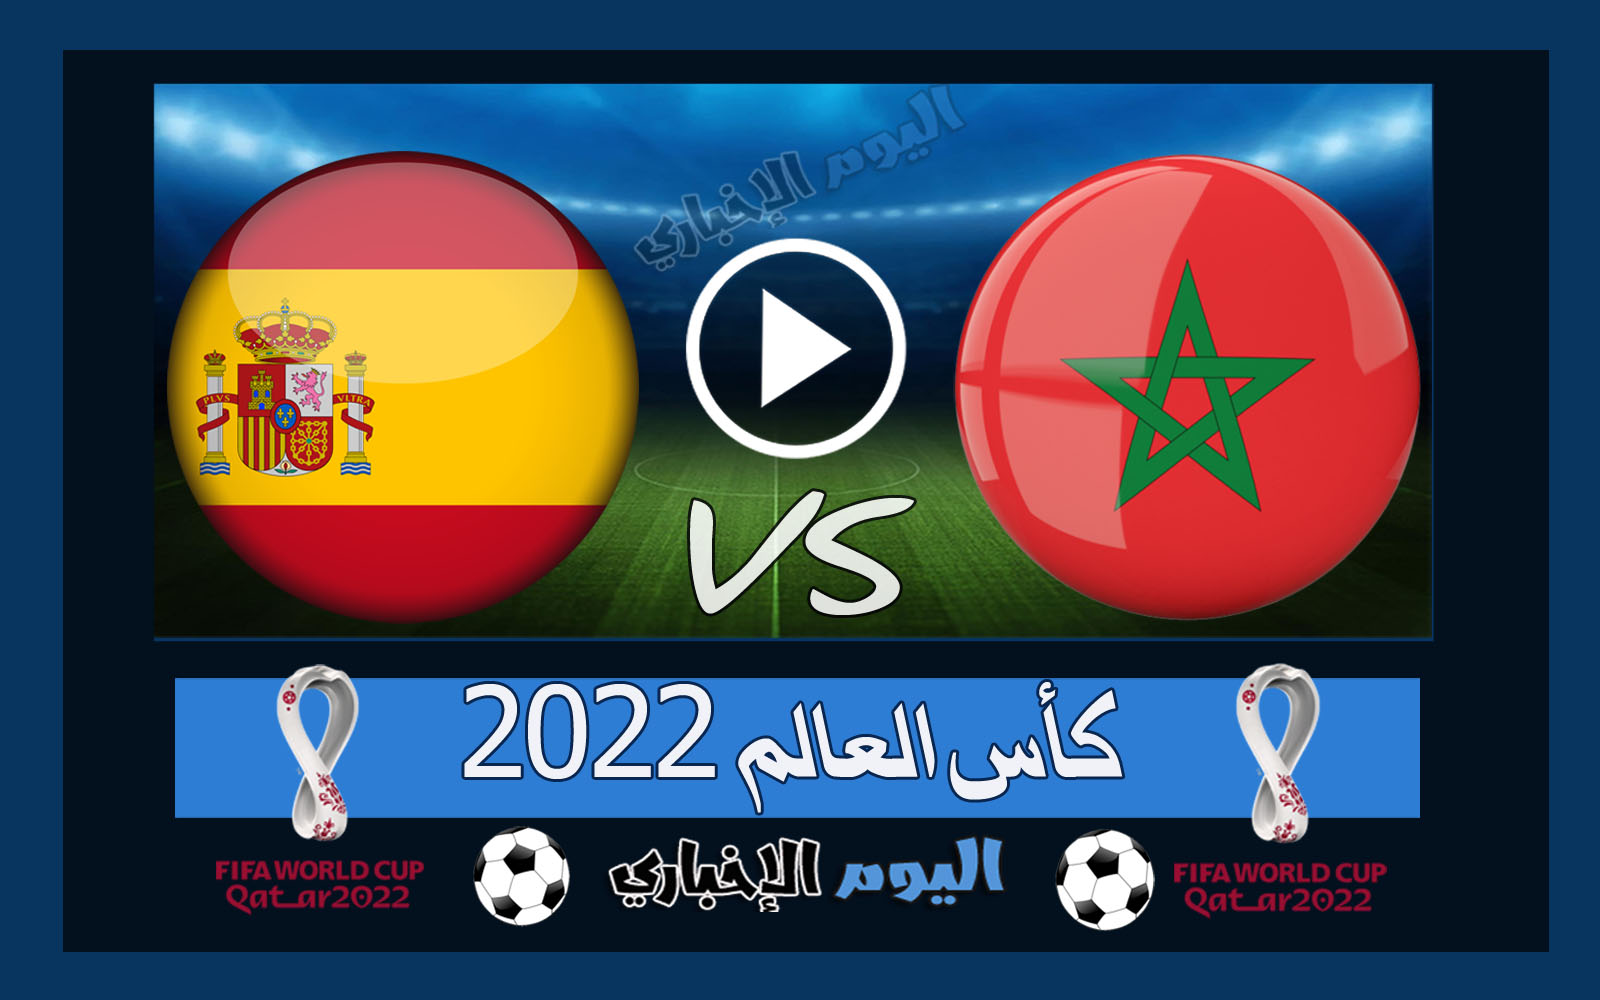 “الأسود تقصي الإسبان” نتيجة مباراة المغرب واسبانيا 0-0 اهداف ركلات الترجيح 3-0 اليوم في كأس العالم 2022